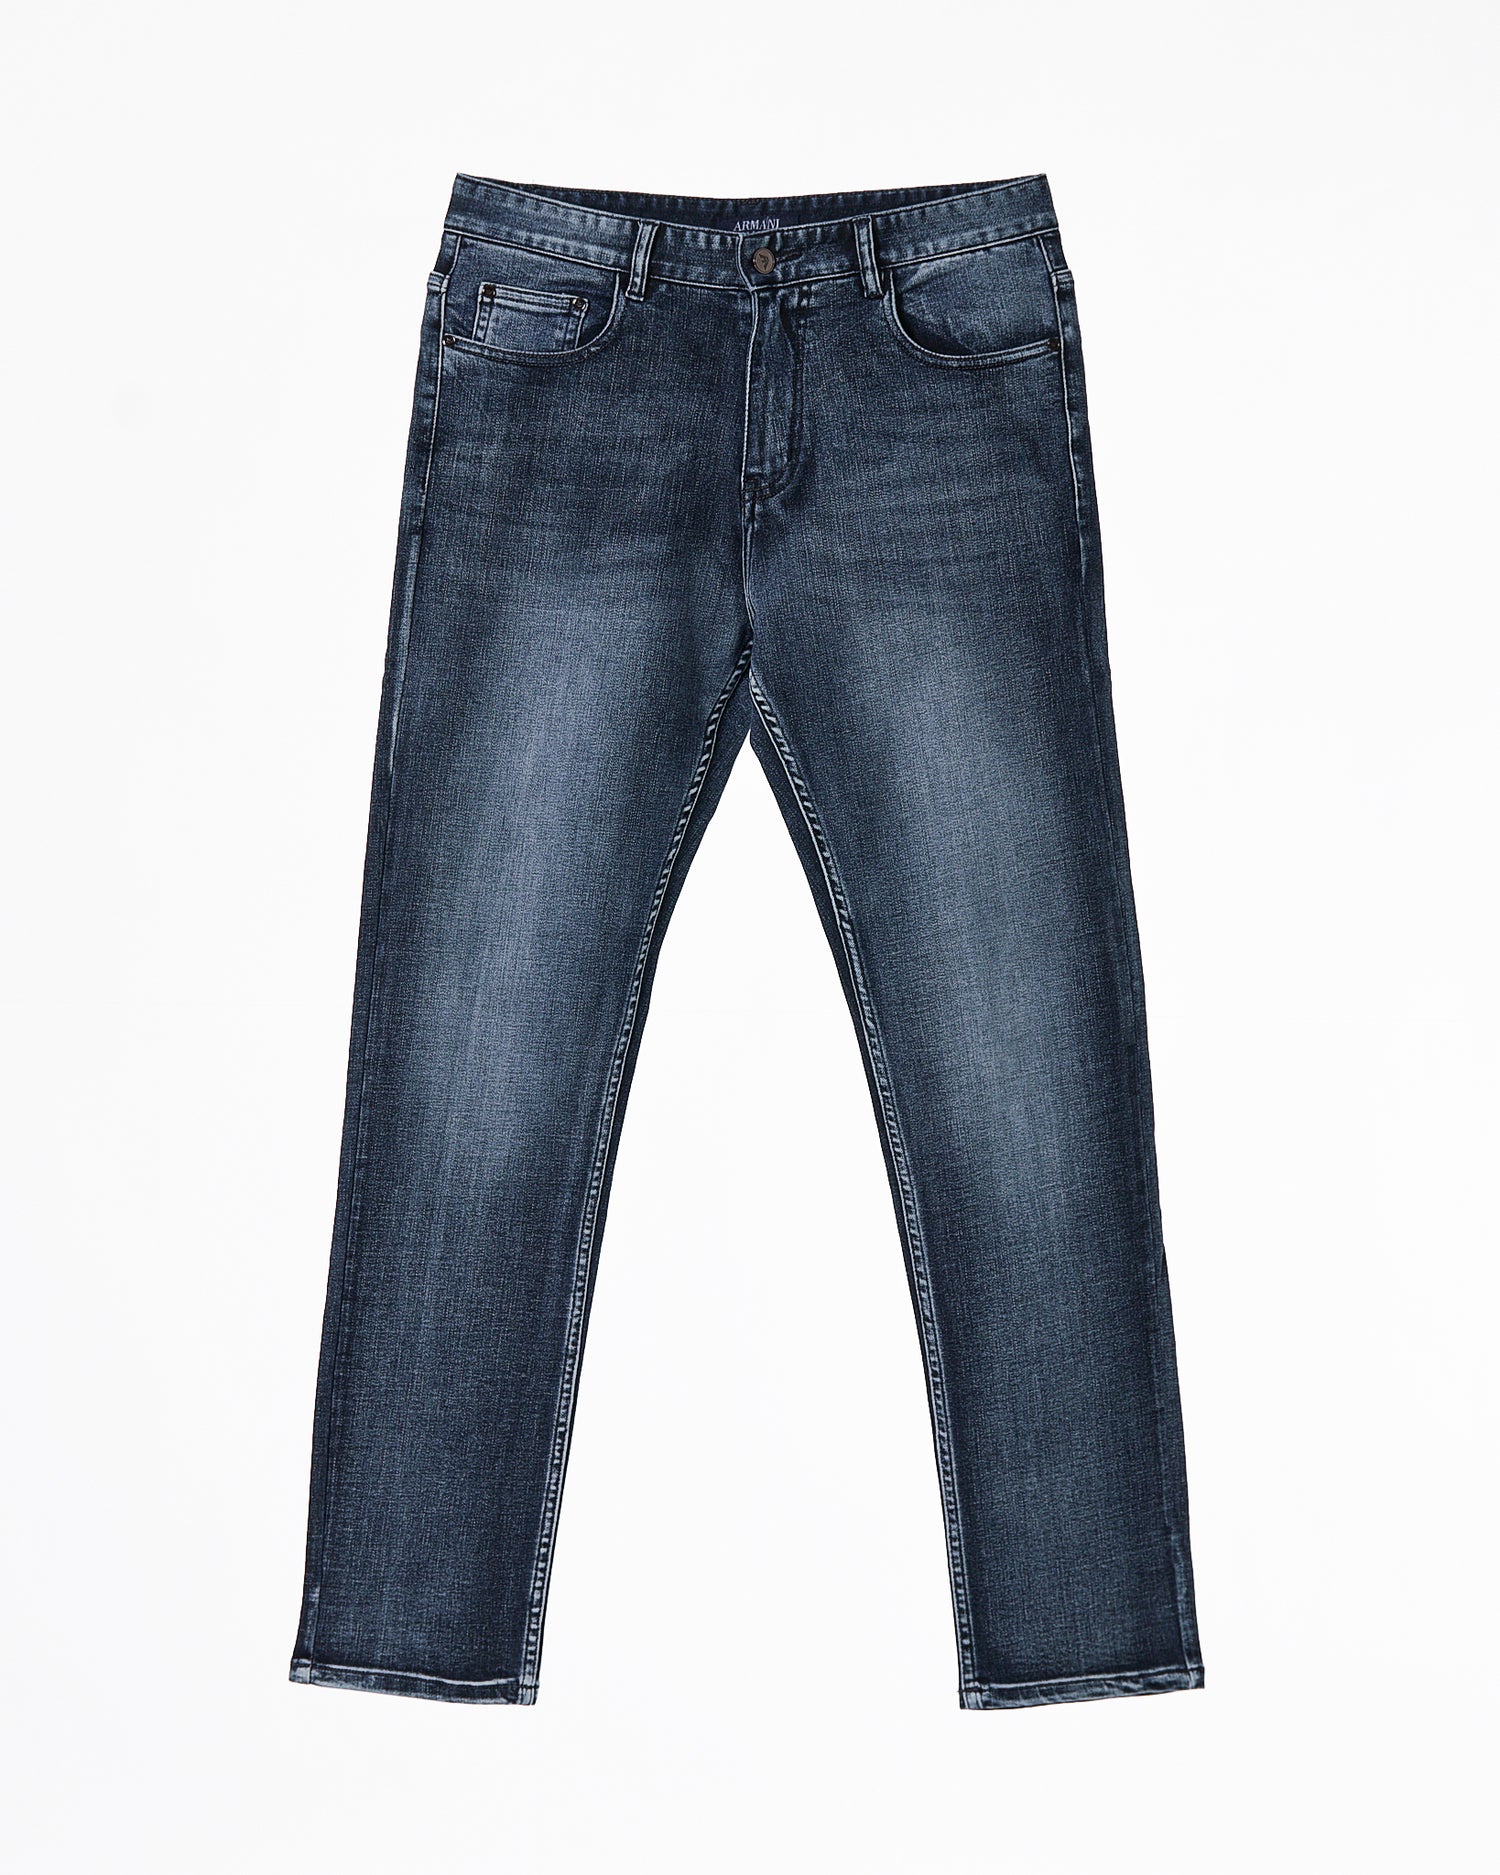 ARM Premium Soft Stretchy Men Blue Slim Fit Jeans 65.90